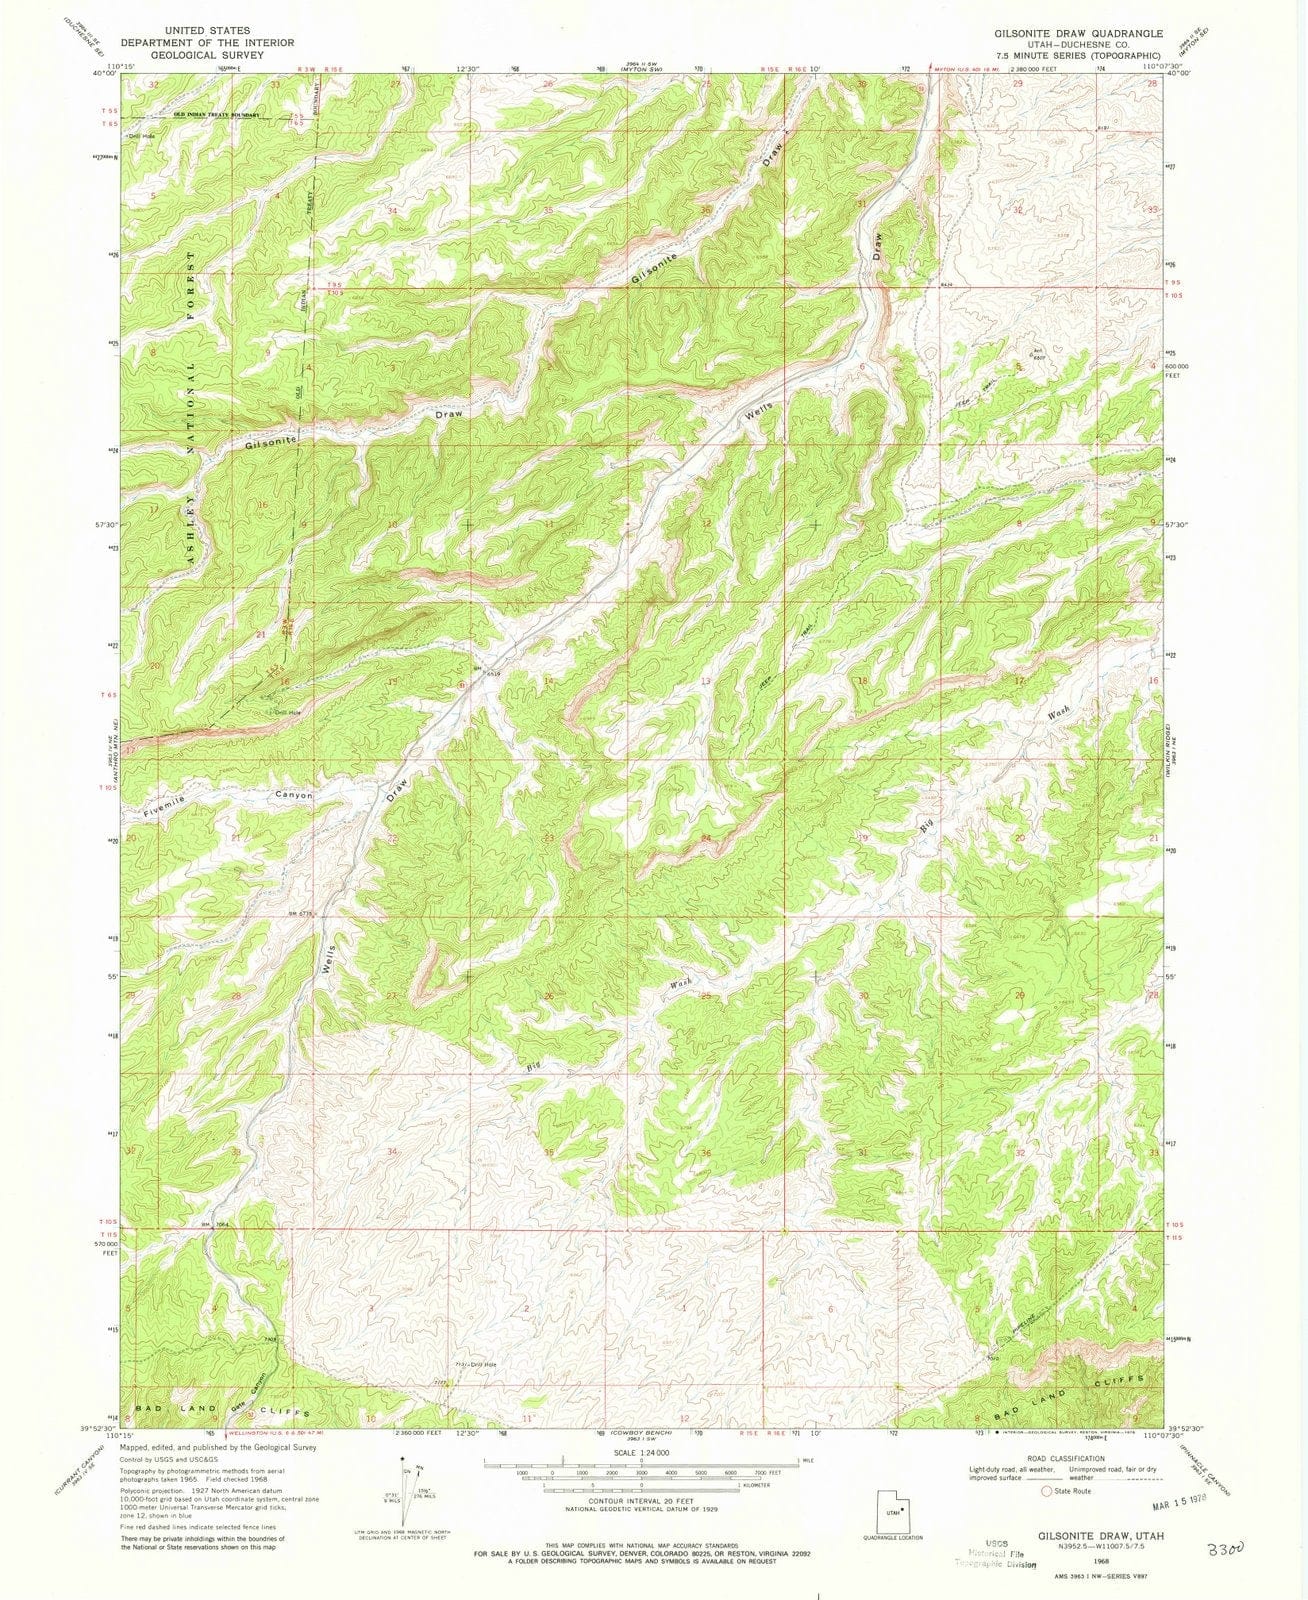 1968 Gilsoniteraw, UT - Utah - USGS Topographic Map